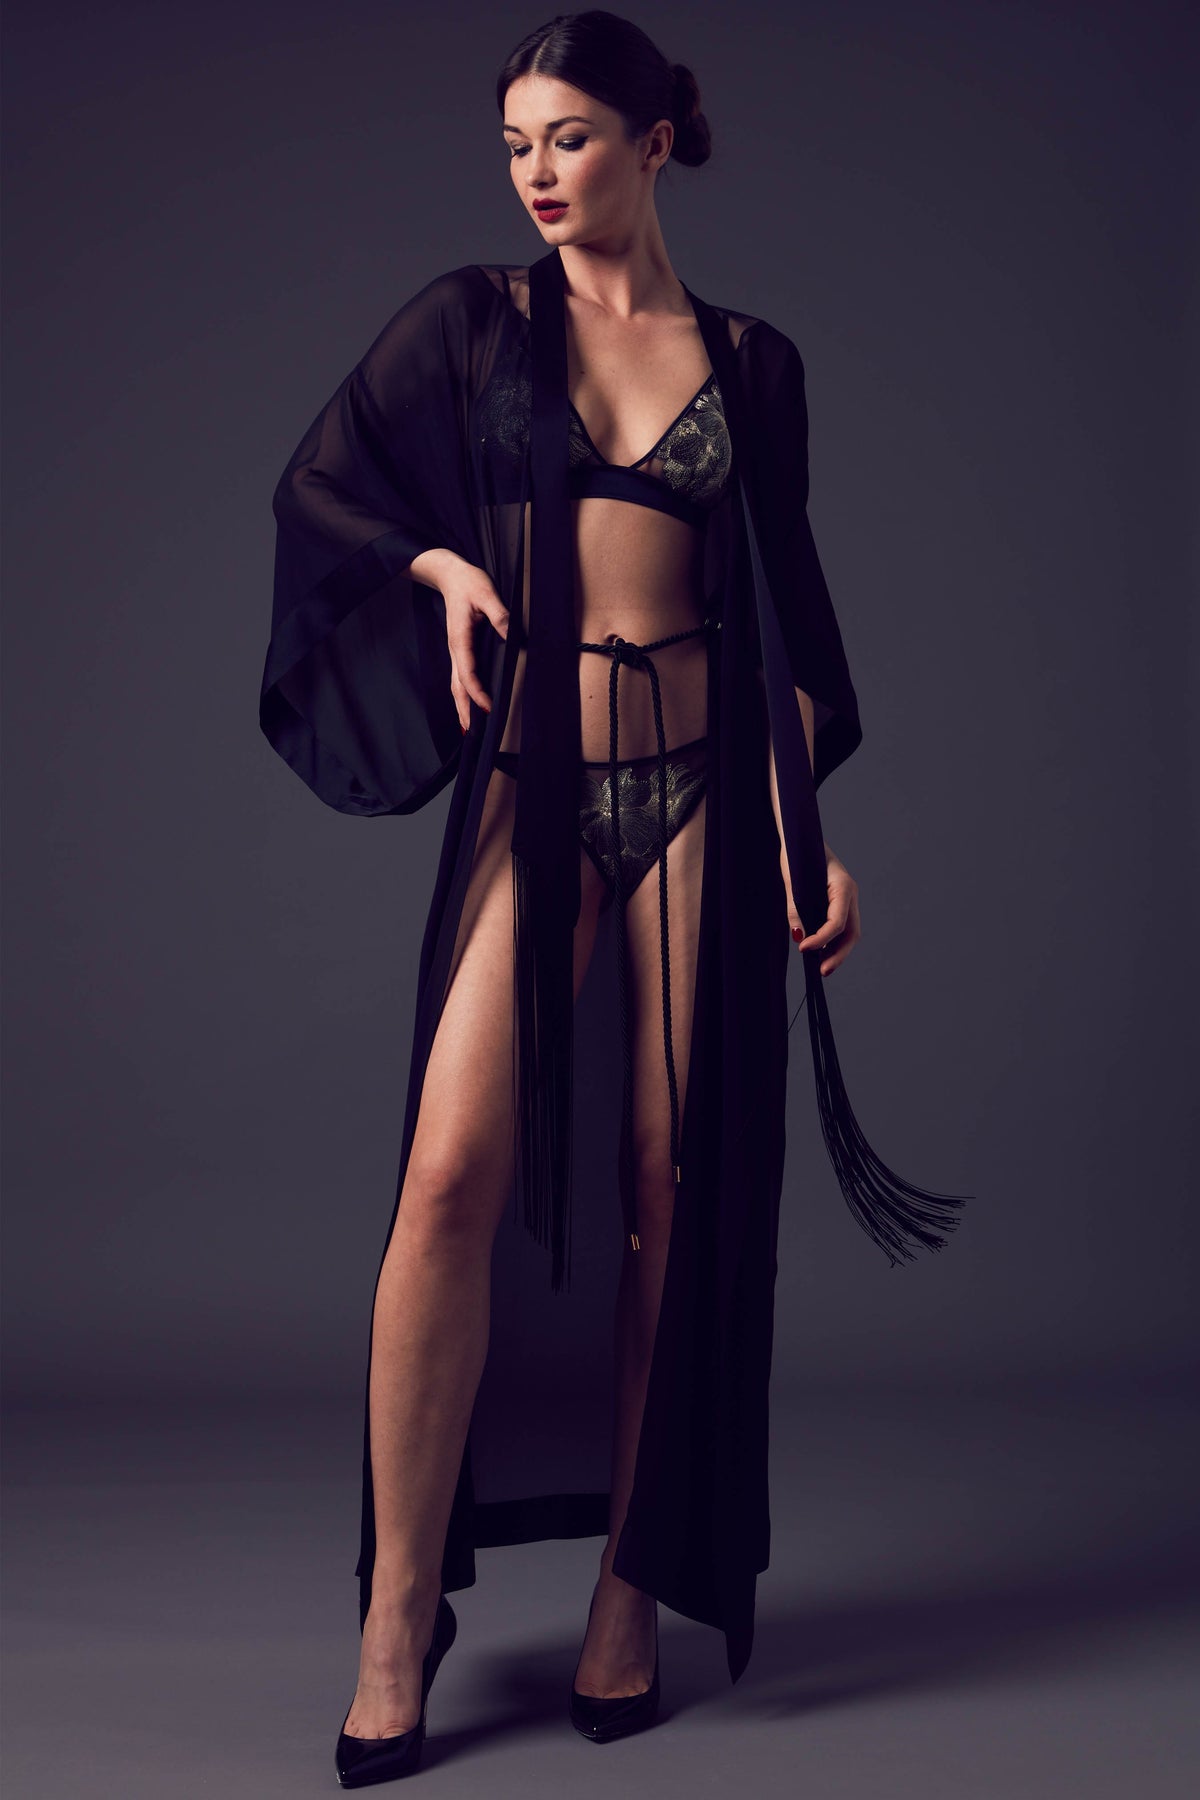 Nancy Ganz Body Architect Beige Ultra Firm Slip Dress With Bra L54227 Size  36D